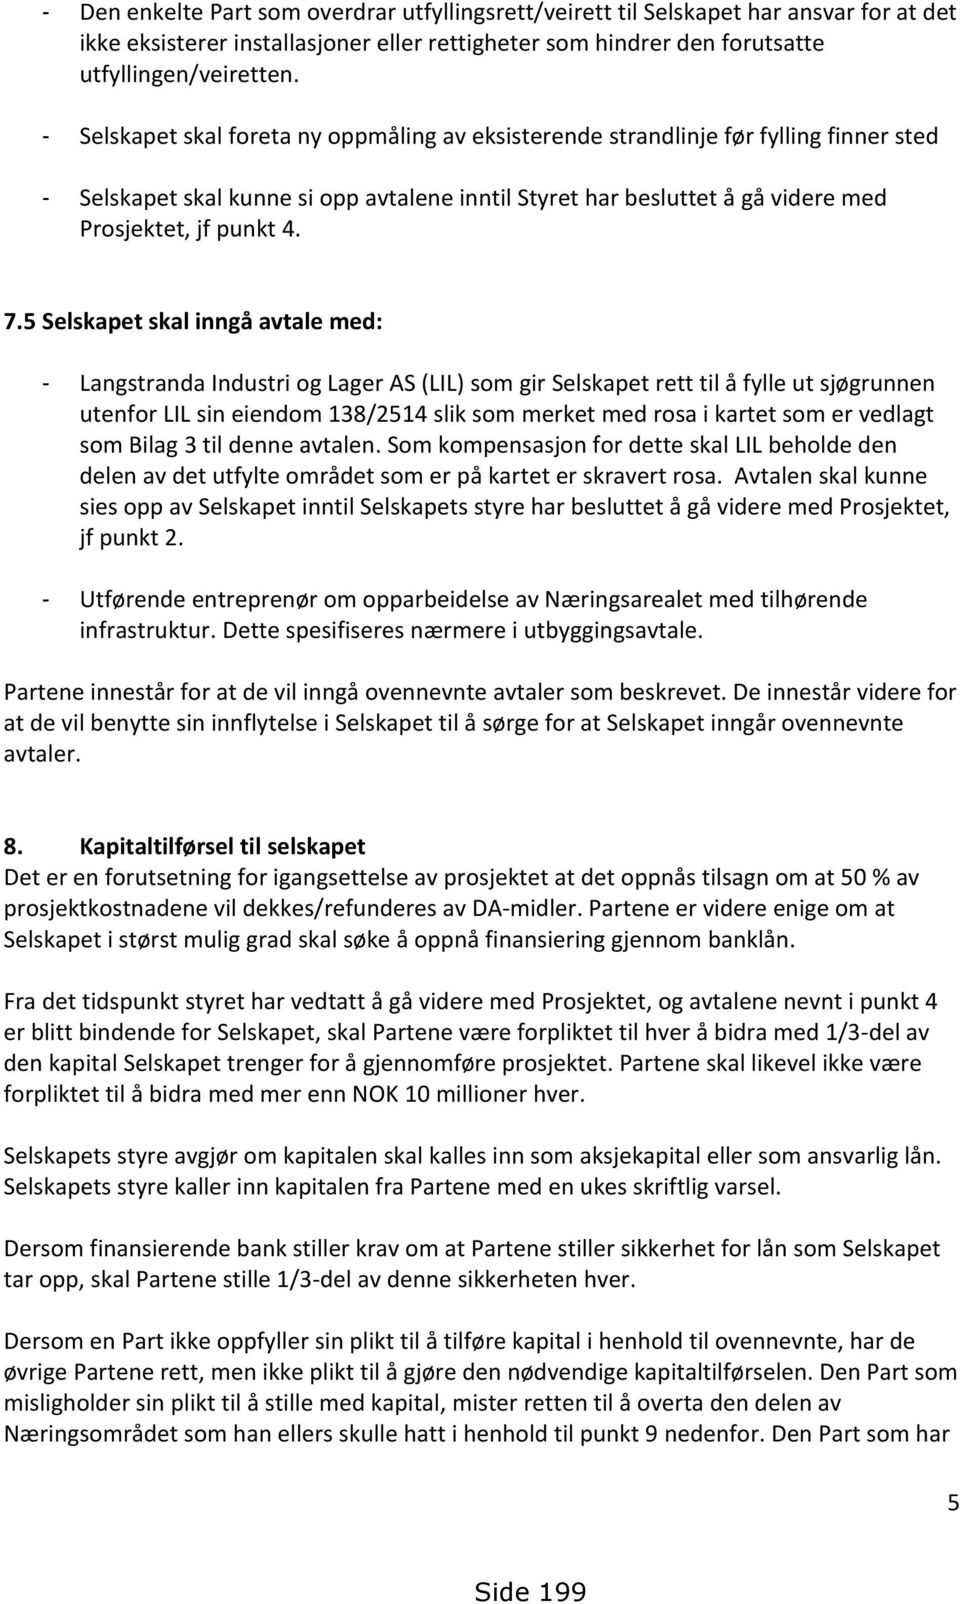 5 Selskapet skal inngå avtale med: - Langstranda Industri og Lager AS (LIL) som gir Selskapet rett til å fylle ut sjøgrunnen utenfor LIL sin eiendom 138/2514 slik som merket med rosa i kartet som er